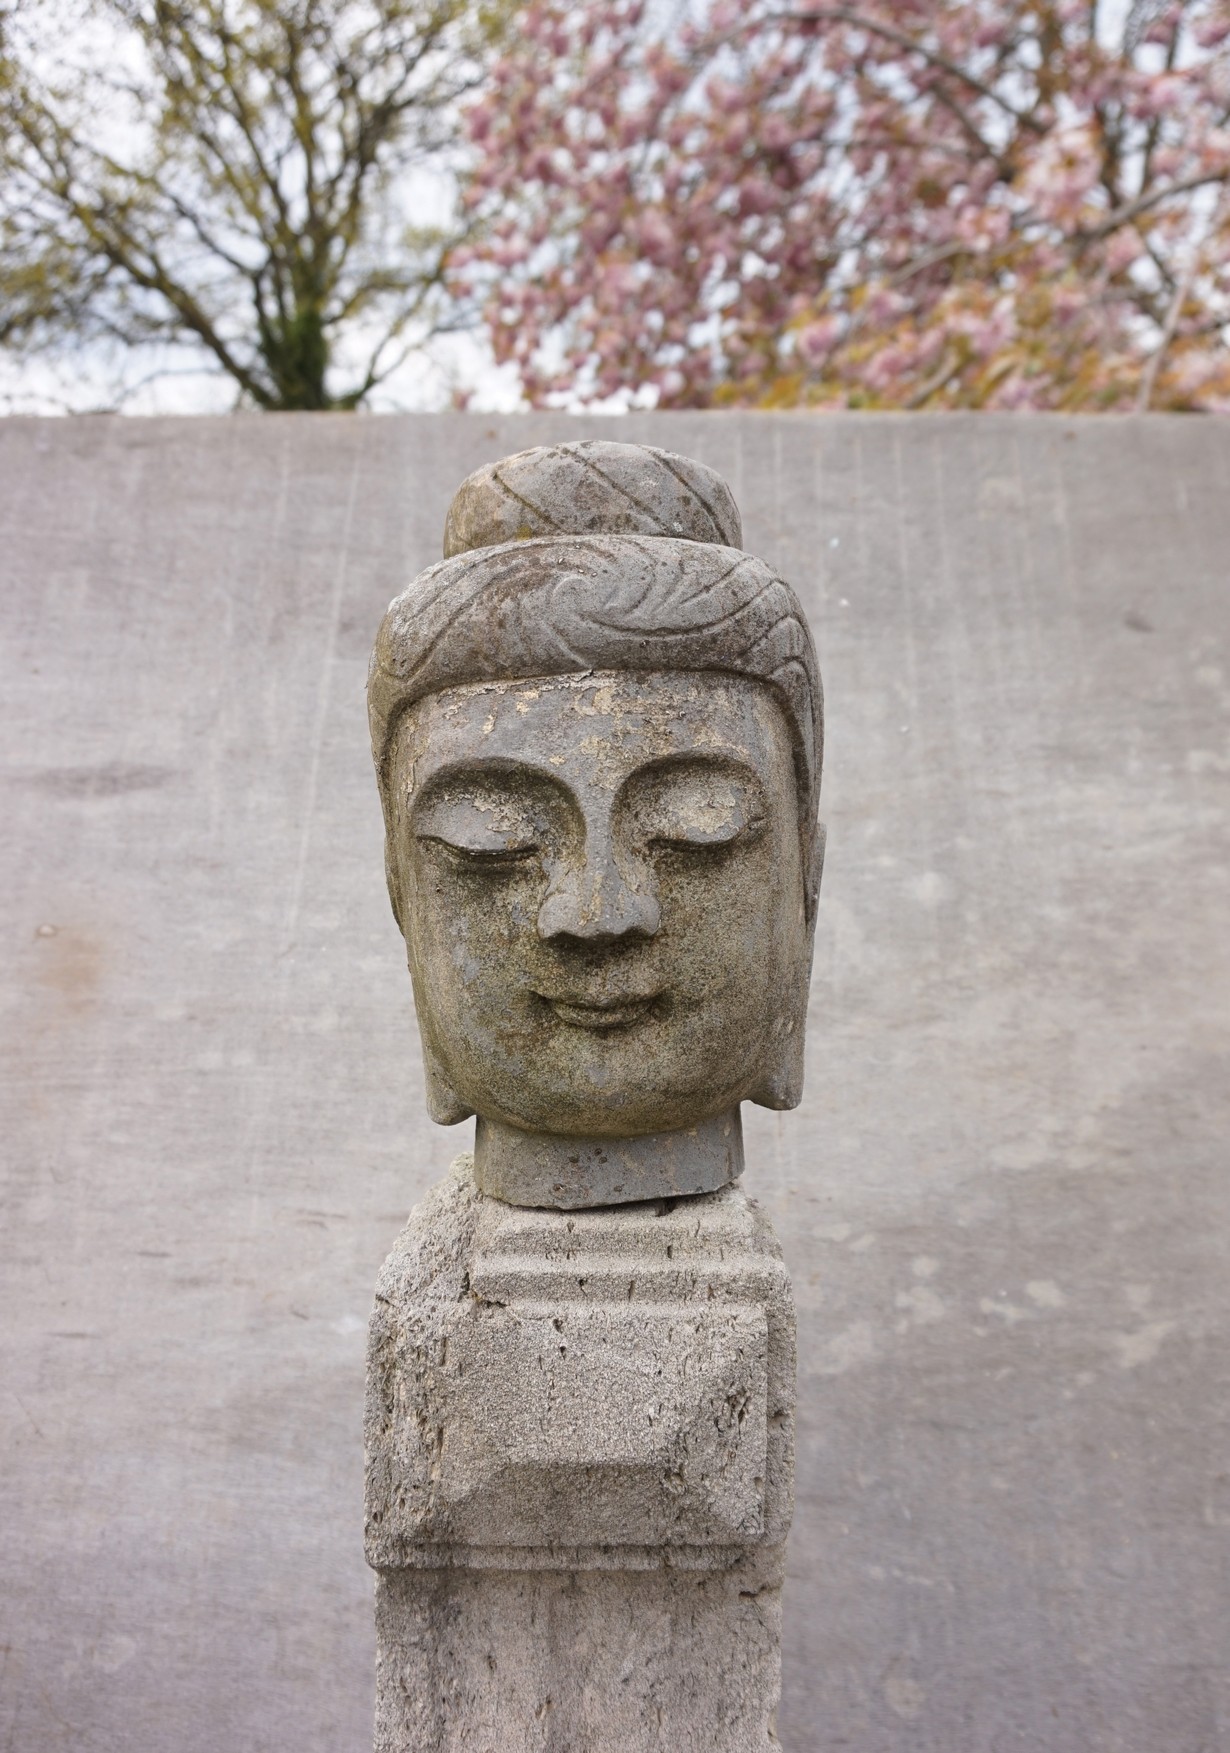 Krachtcel geroosterd brood omzeilen oud antiek stenen Boeddha hoofd